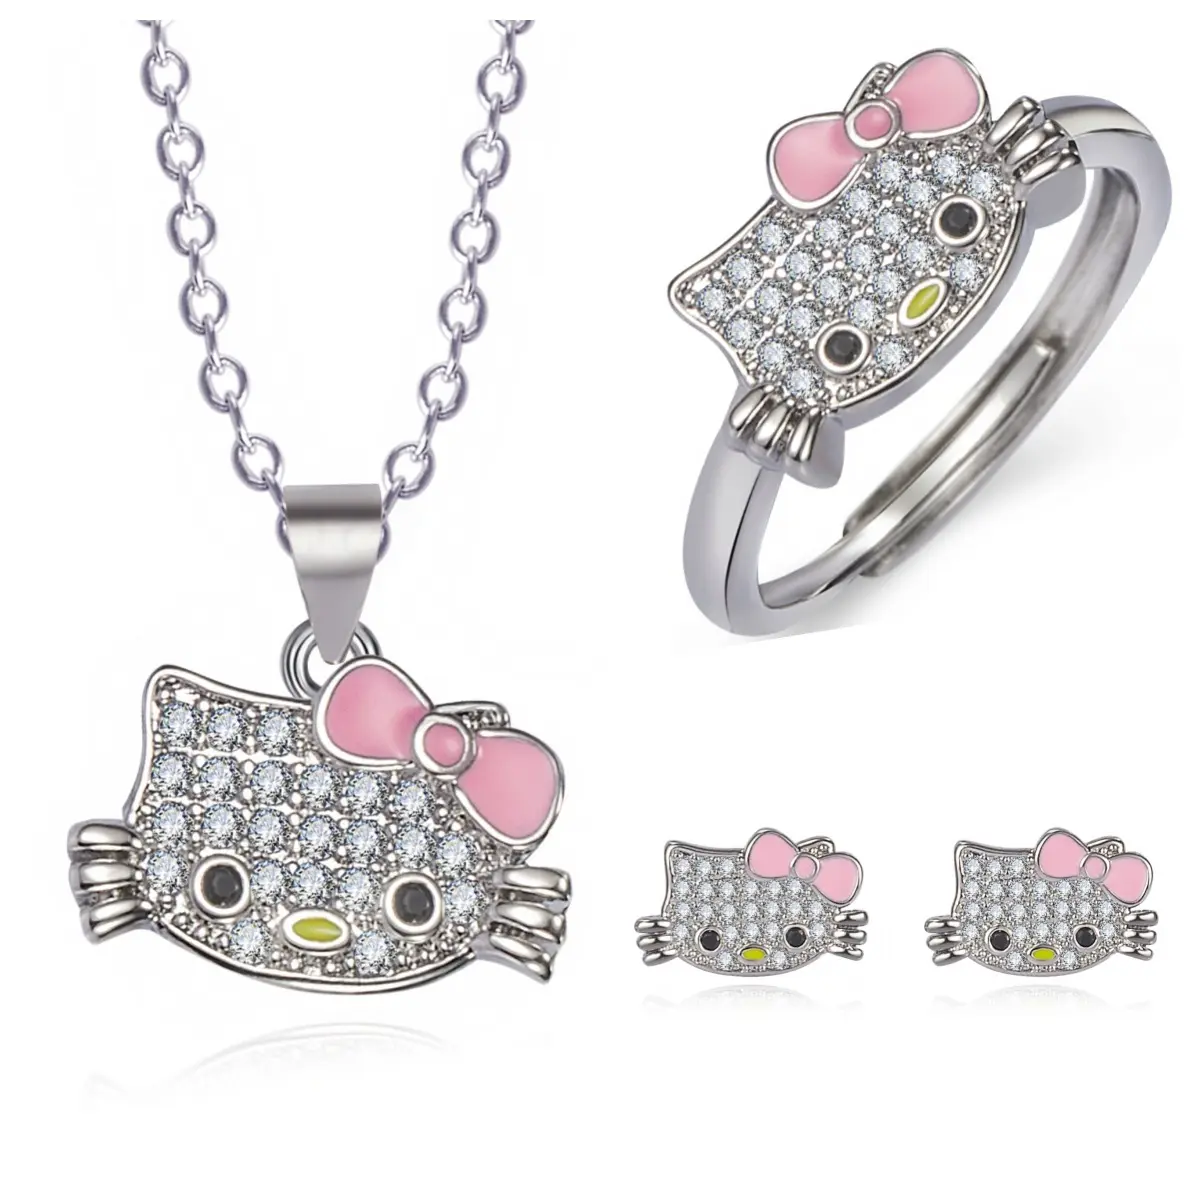 Hello Kitty completo diamante arco lindo collar pendientes y anillo abierto mujer dibujos animados dulce gatito joyería conjunto Mujer